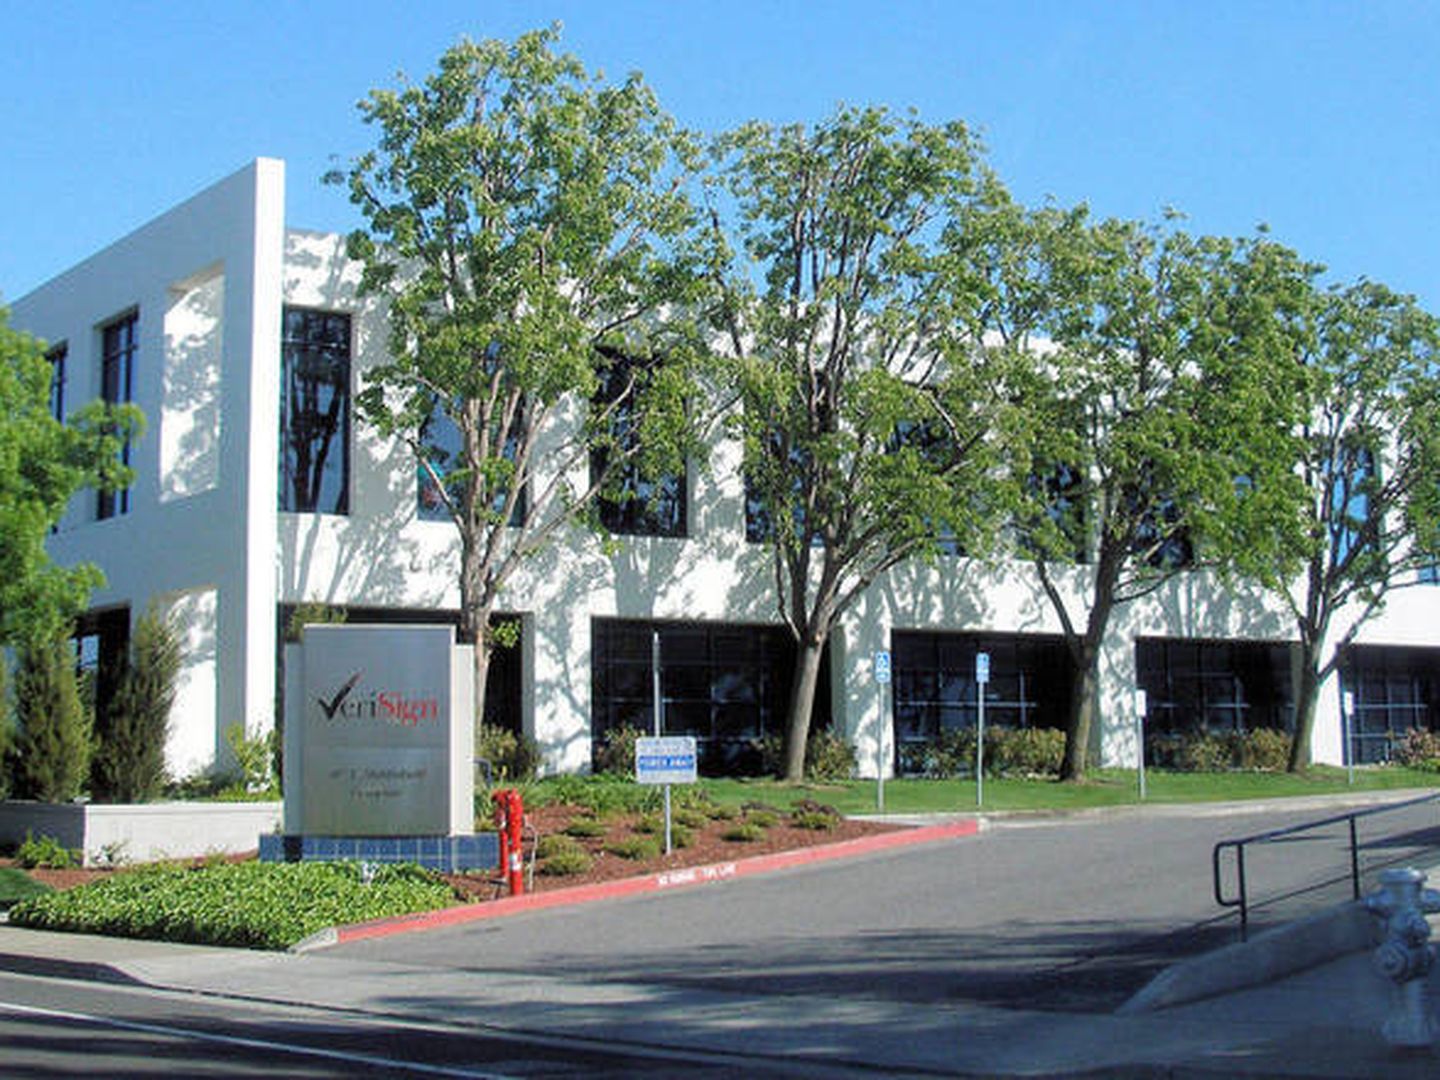 Oficina de Verisign en Mountain View, California. (Wikipedia)